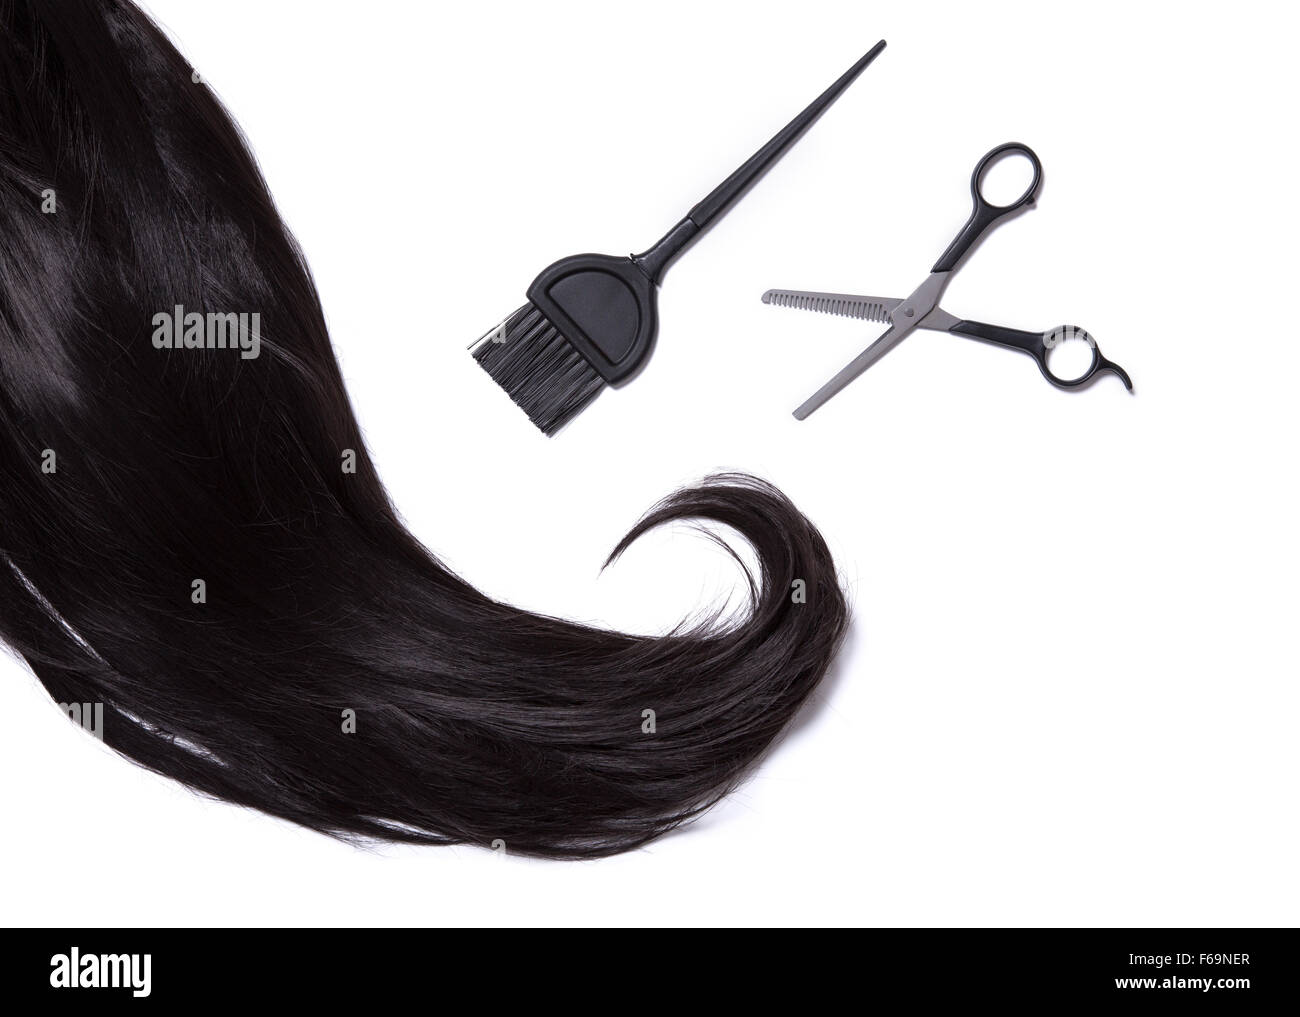 Draufsicht auf schwarz glänzendes Haar, Farbstoff Haarbürste und professionelle Scheren, isoliert auf weißem Hintergrund Stockfoto